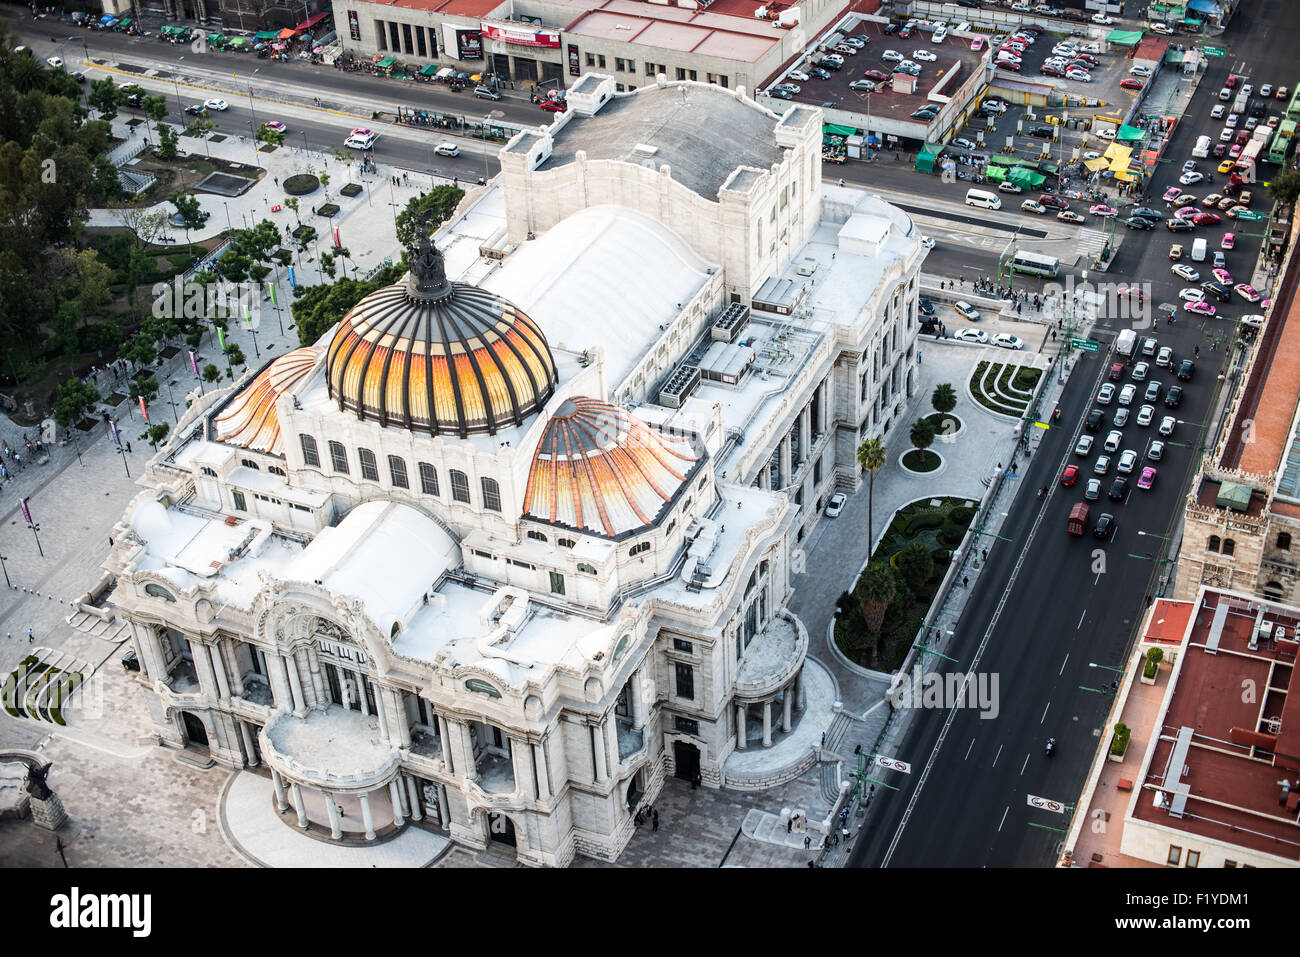 MEXIKO-STADT, Mexiko - ein unvergleichlicher Blick auf die herrliche Kuppel des Palacio de Bellas Artes, einer der wichtigsten kulturellen Einrichtungen Mexikos. Die lebendige, geflieste Oberfläche der Kuppel ist ein Beleg für die reiche Tradition der künstlerischen und architektonischen Exzellenz des Landes. Stockfoto